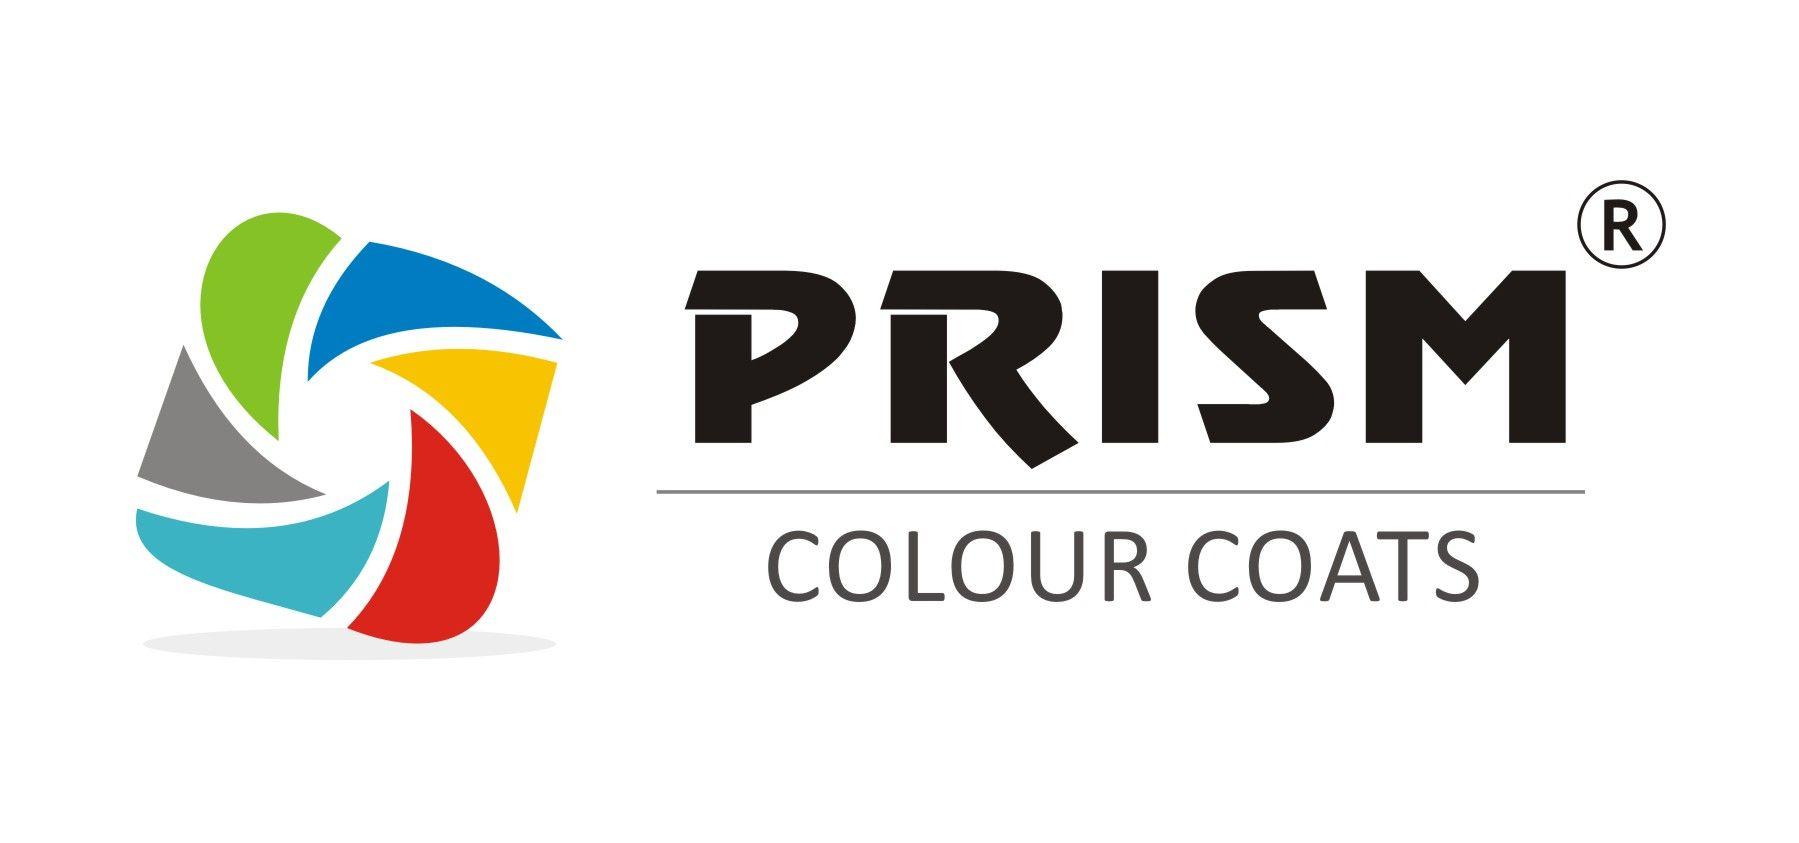 PRISM COLOUR COATS